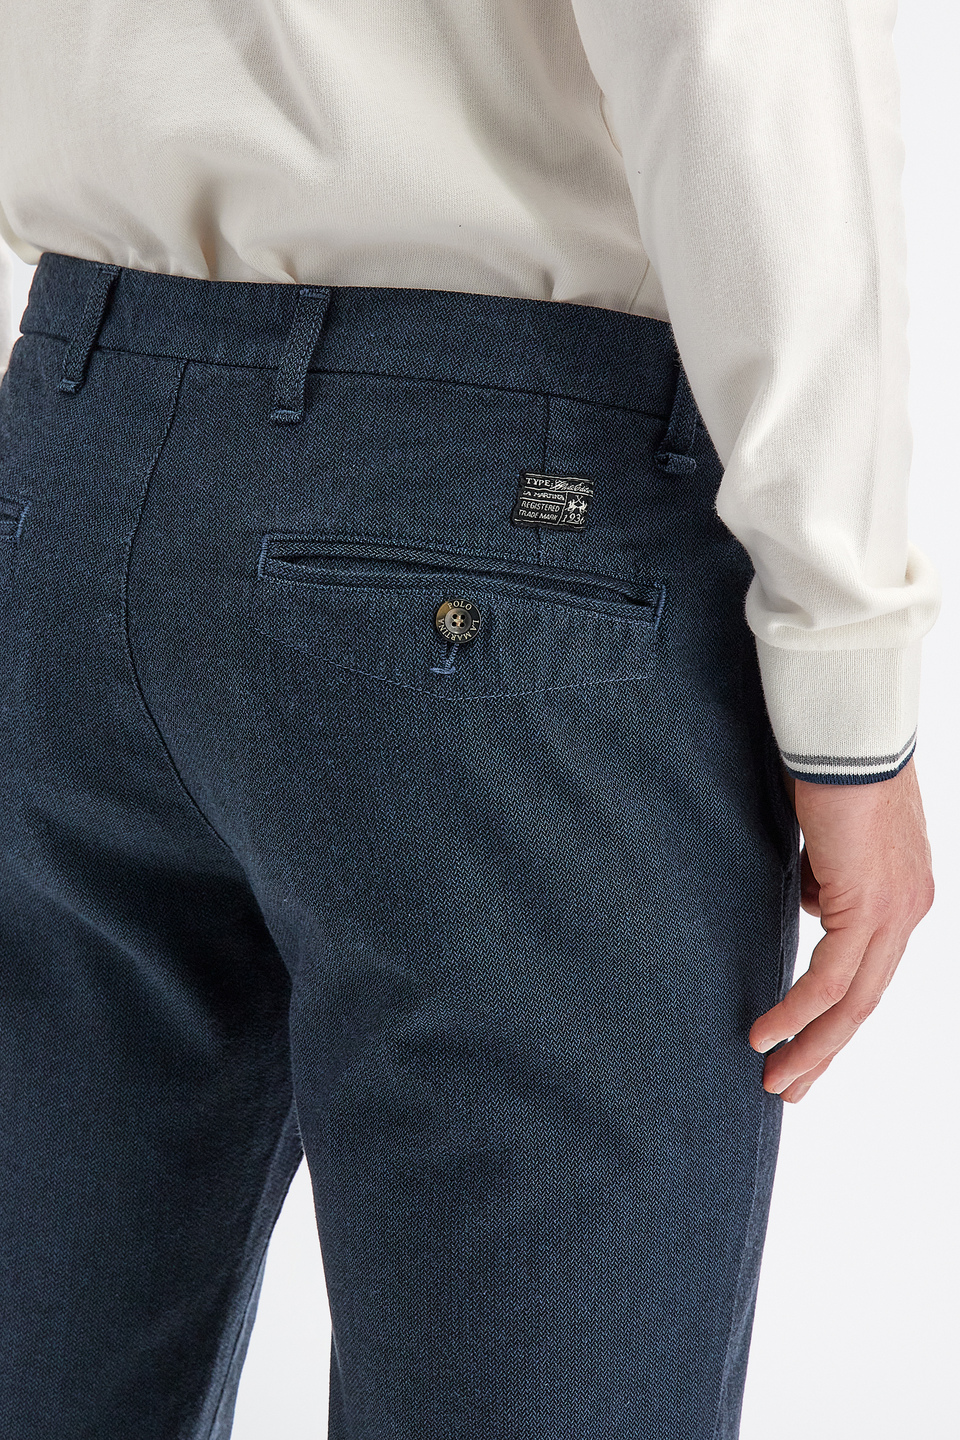 Pantalon homme modèle 5 poches en coton coupe régulière | La Martina - Official Online Shop